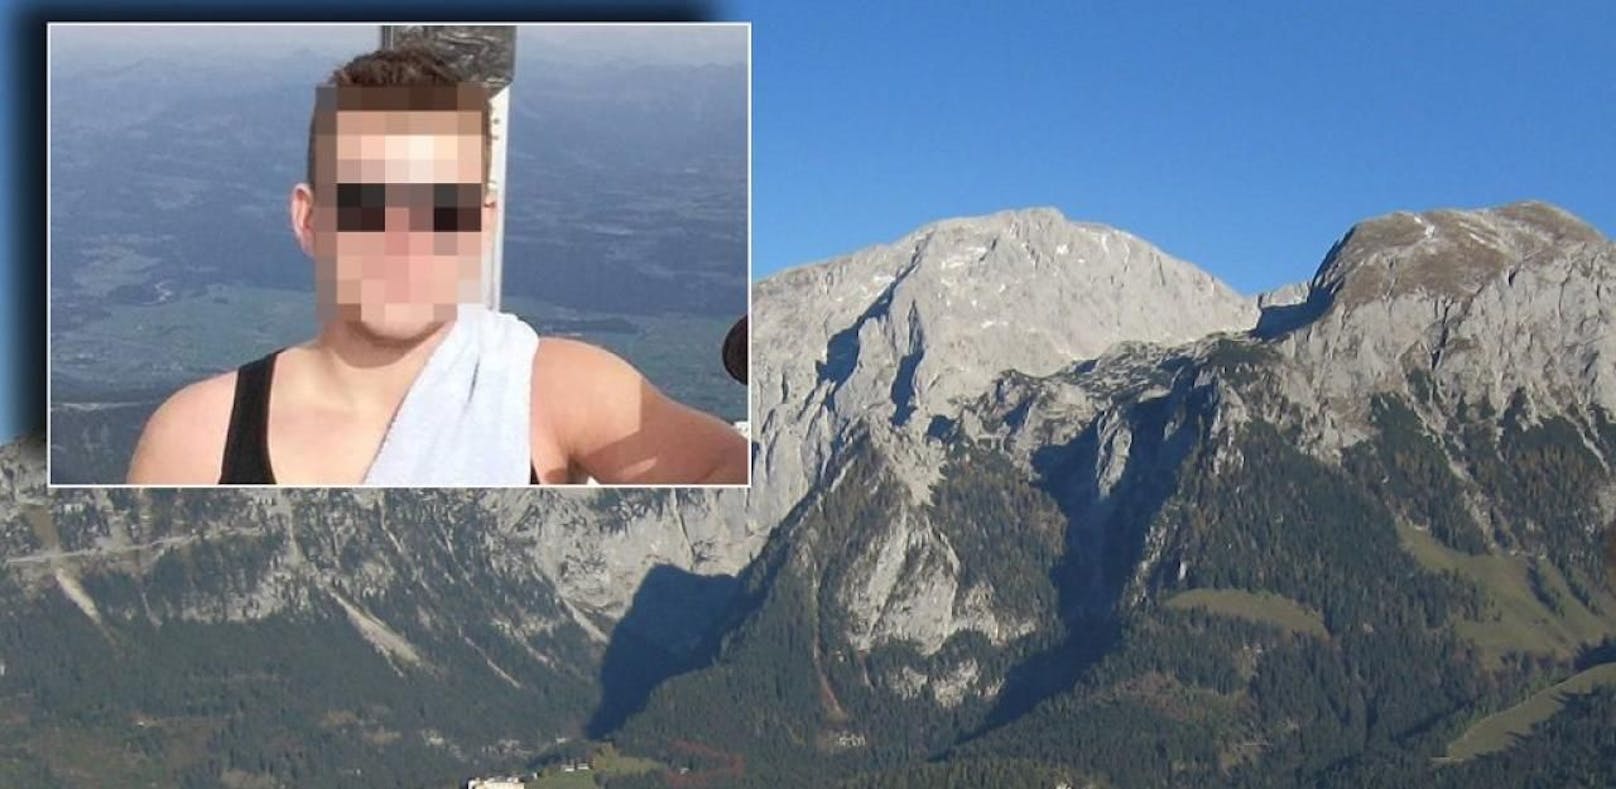 Todes-Drama in den Alpen: Loris (23) war seit Oktober 2016 vermisst. Nun wurde seine Leiche gefunden - von Paragleitern.